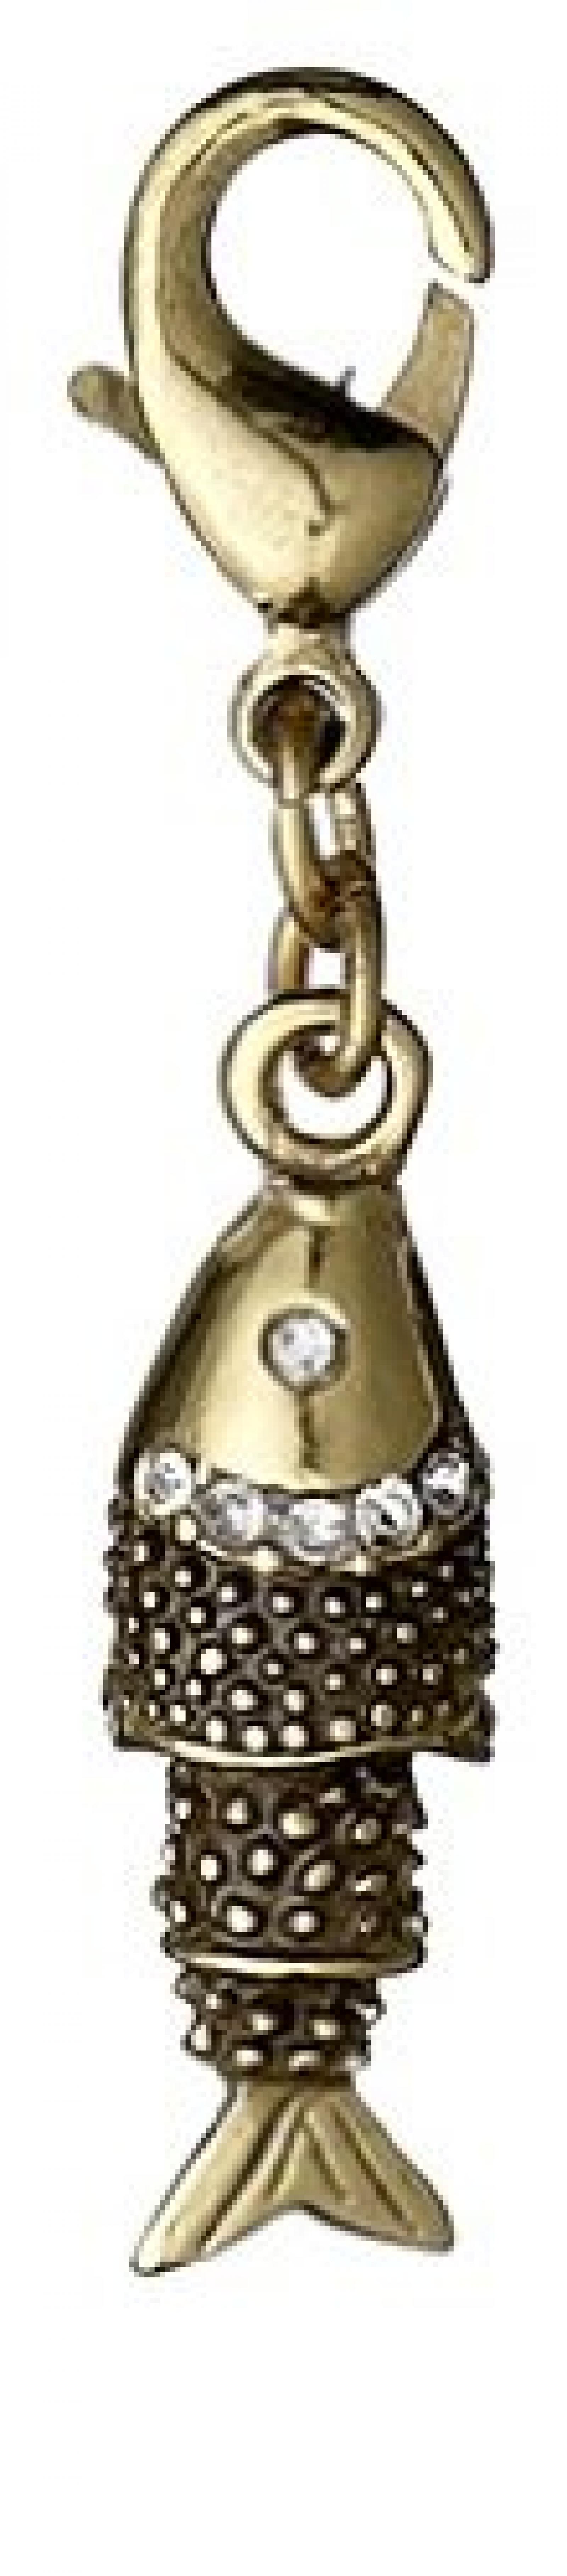 Pilgrim Jewelry Damen-Anhänger Messing aus der Serie vergoldet,weiß 3.8 cm 401322011 